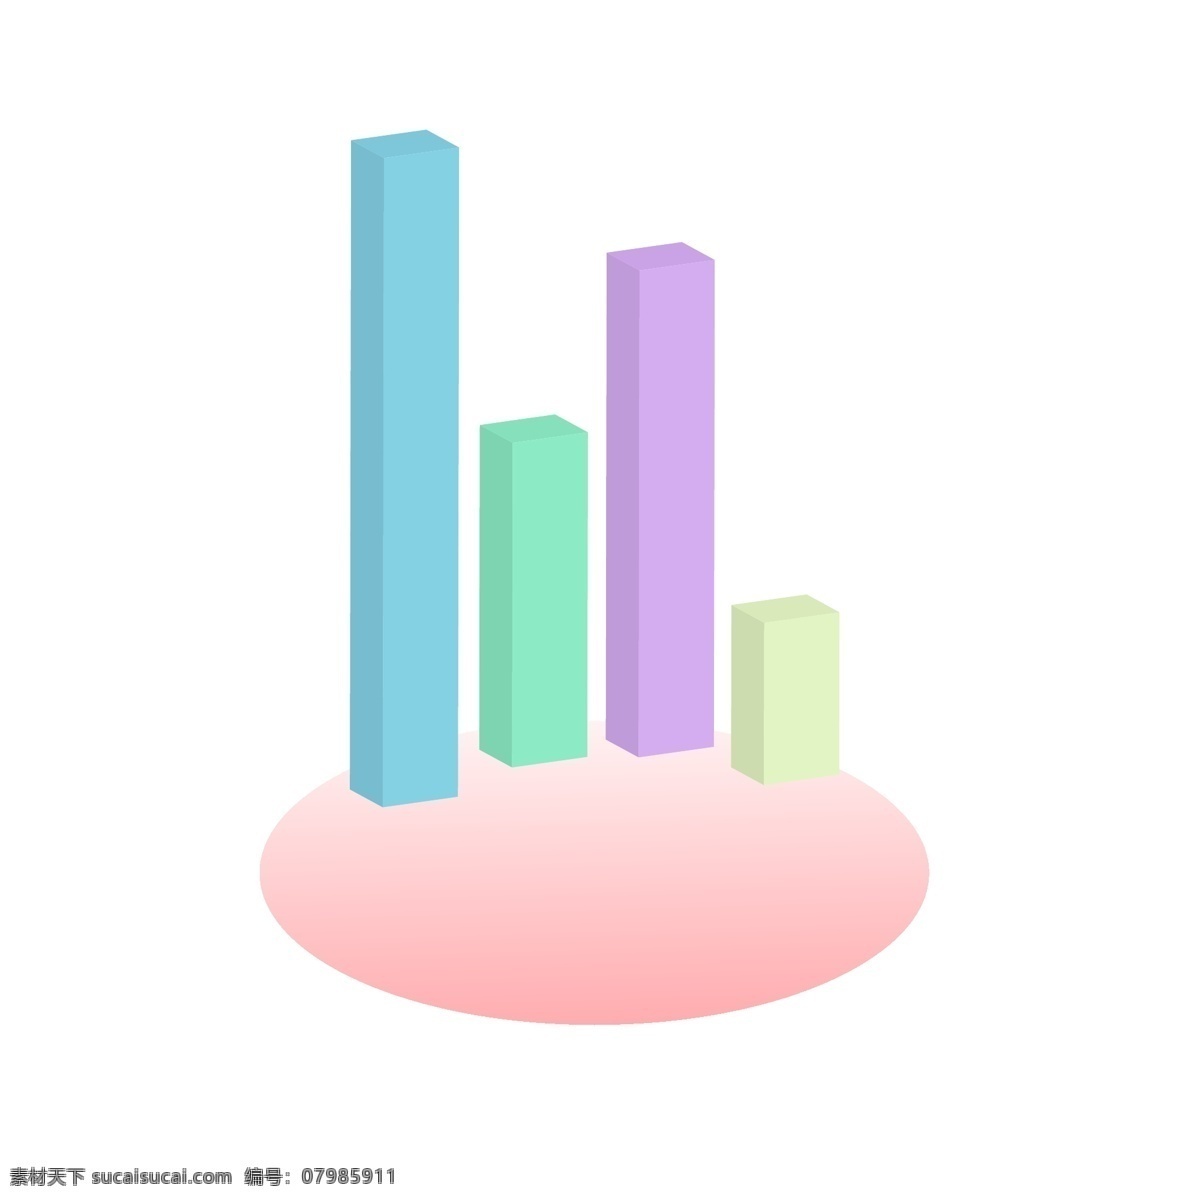 彩色 柱状 图 数据 柱状图 紫色 蓝色 绿色 粉色 彩色图形 柱状图插画 ppt数据 ppt模板 分析图表